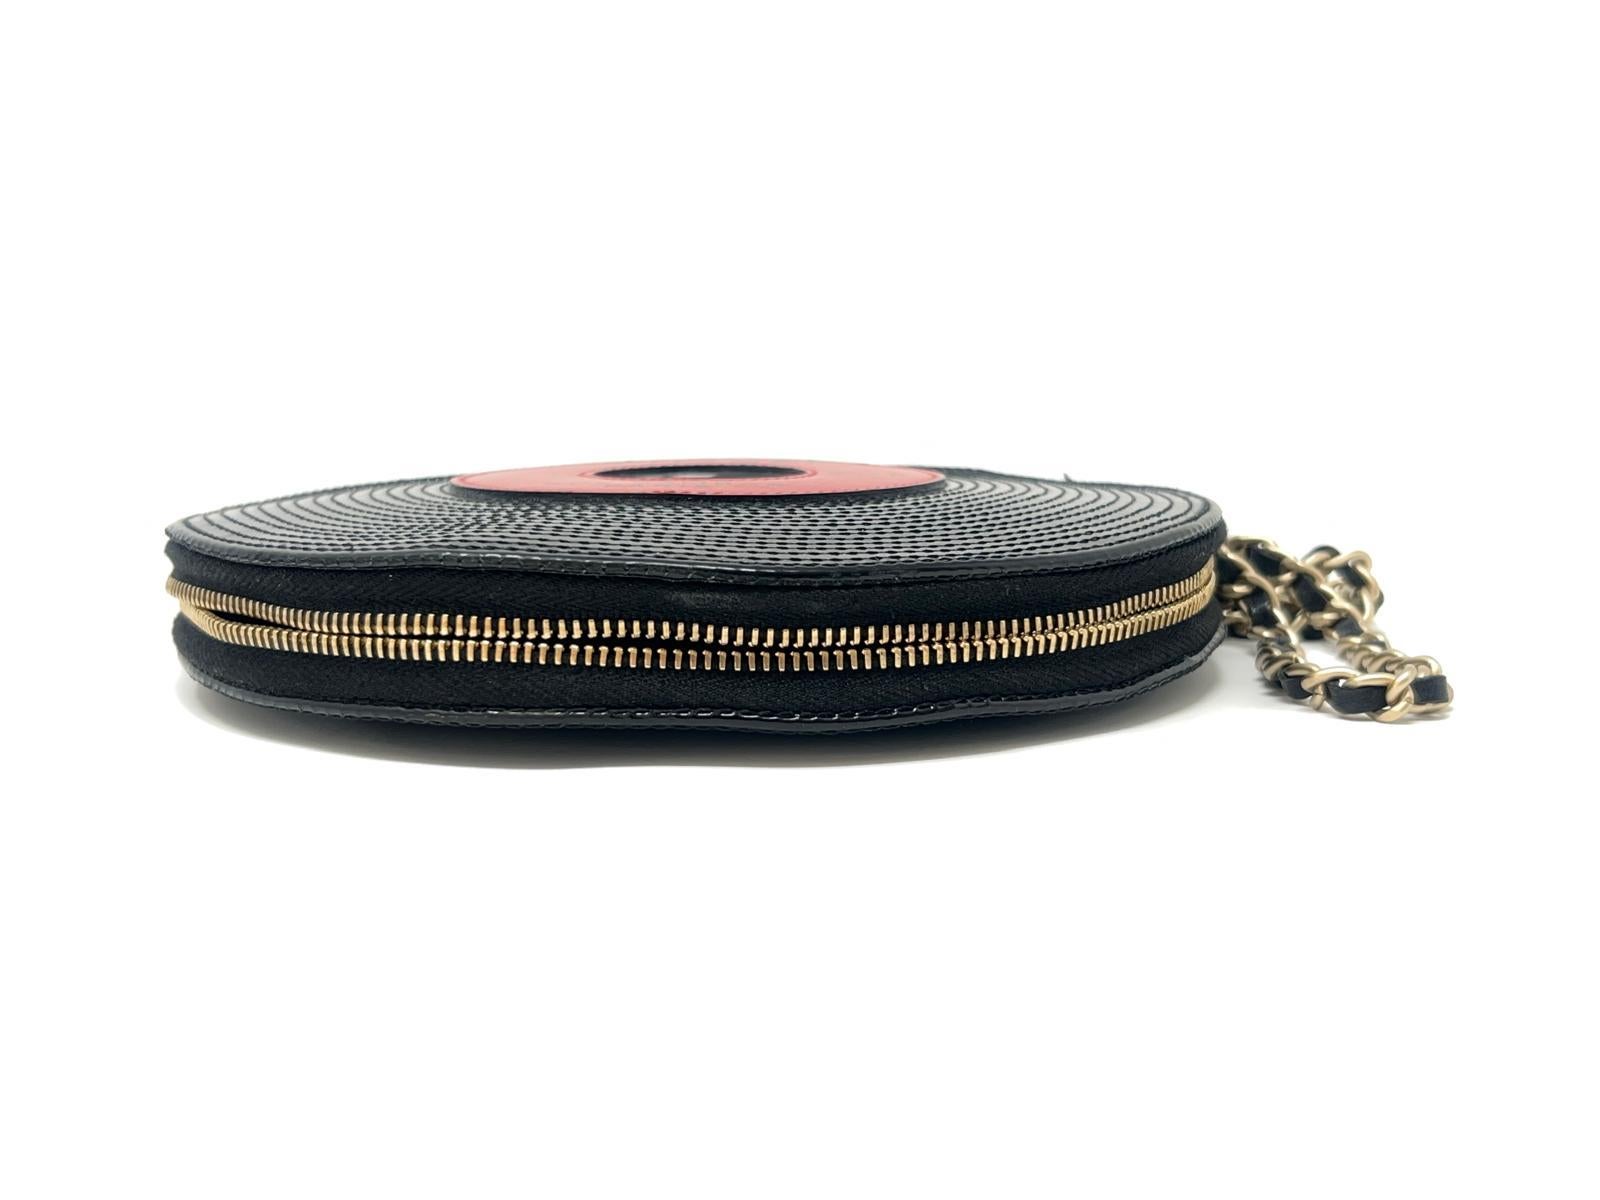 Ce magnifique bracelet Chanel en forme de disque est une pièce maîtresse, en cuir verni noir autour d'un cercle rouge portant l'inscription 